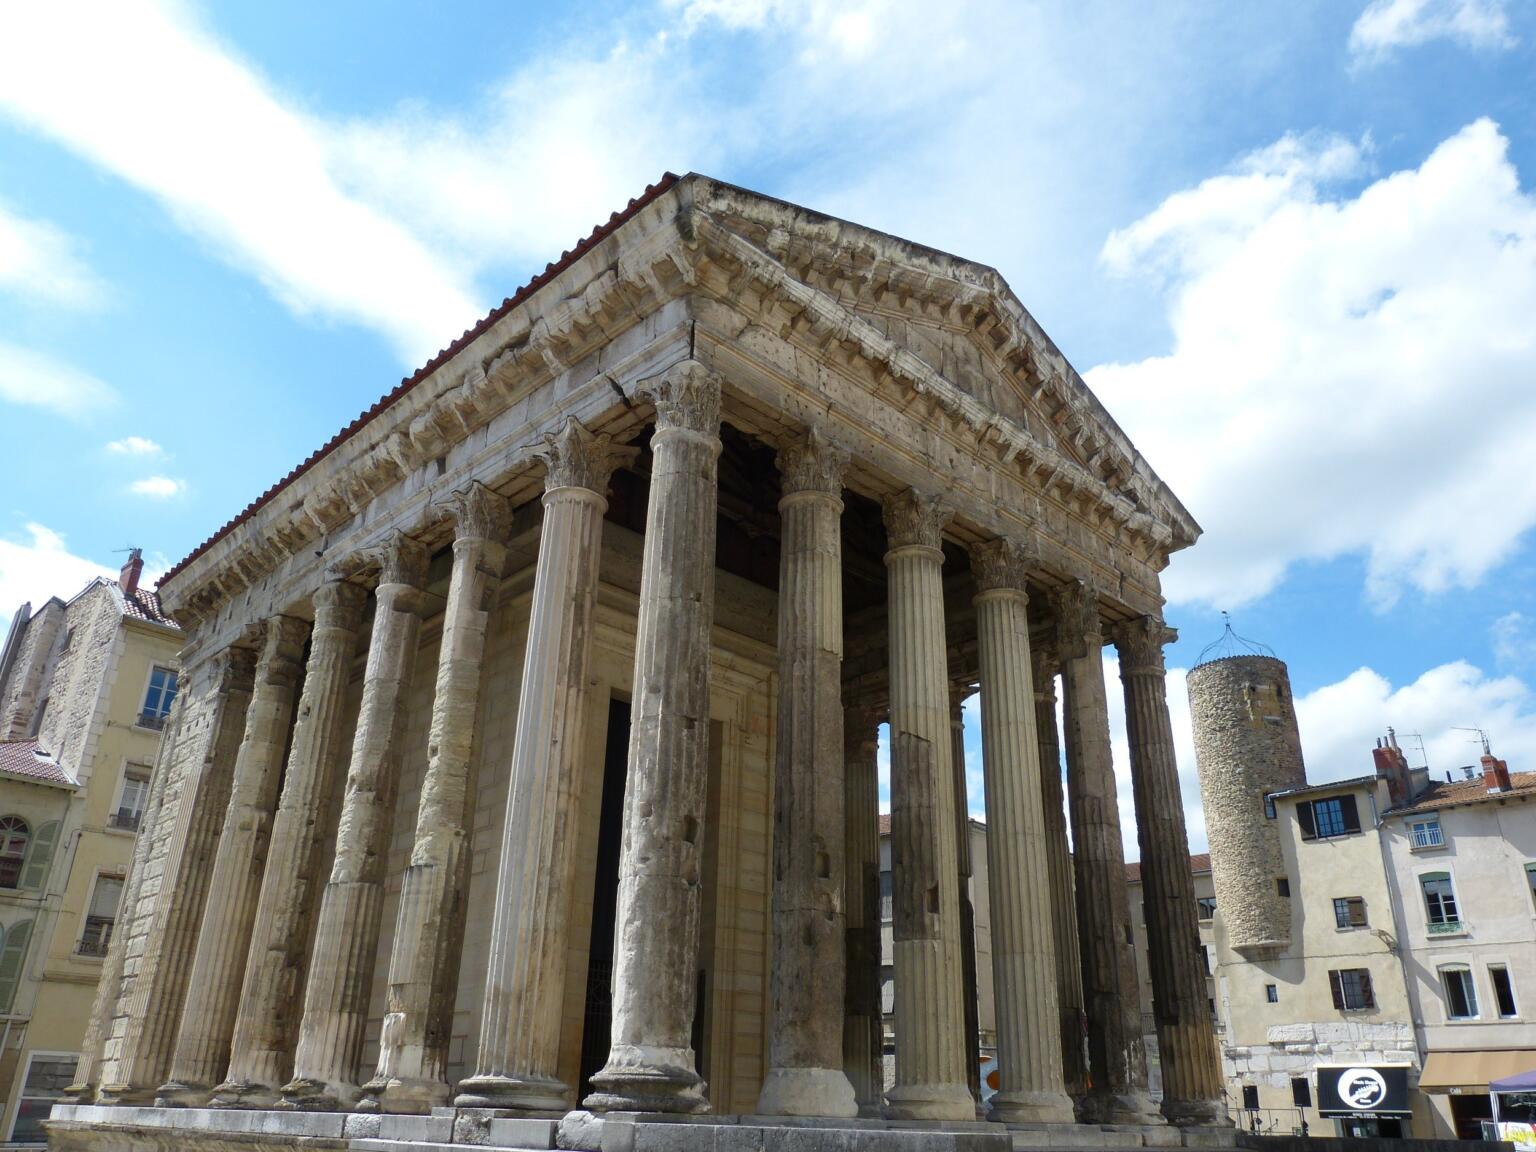 Uncover Vienne's Roman ruins